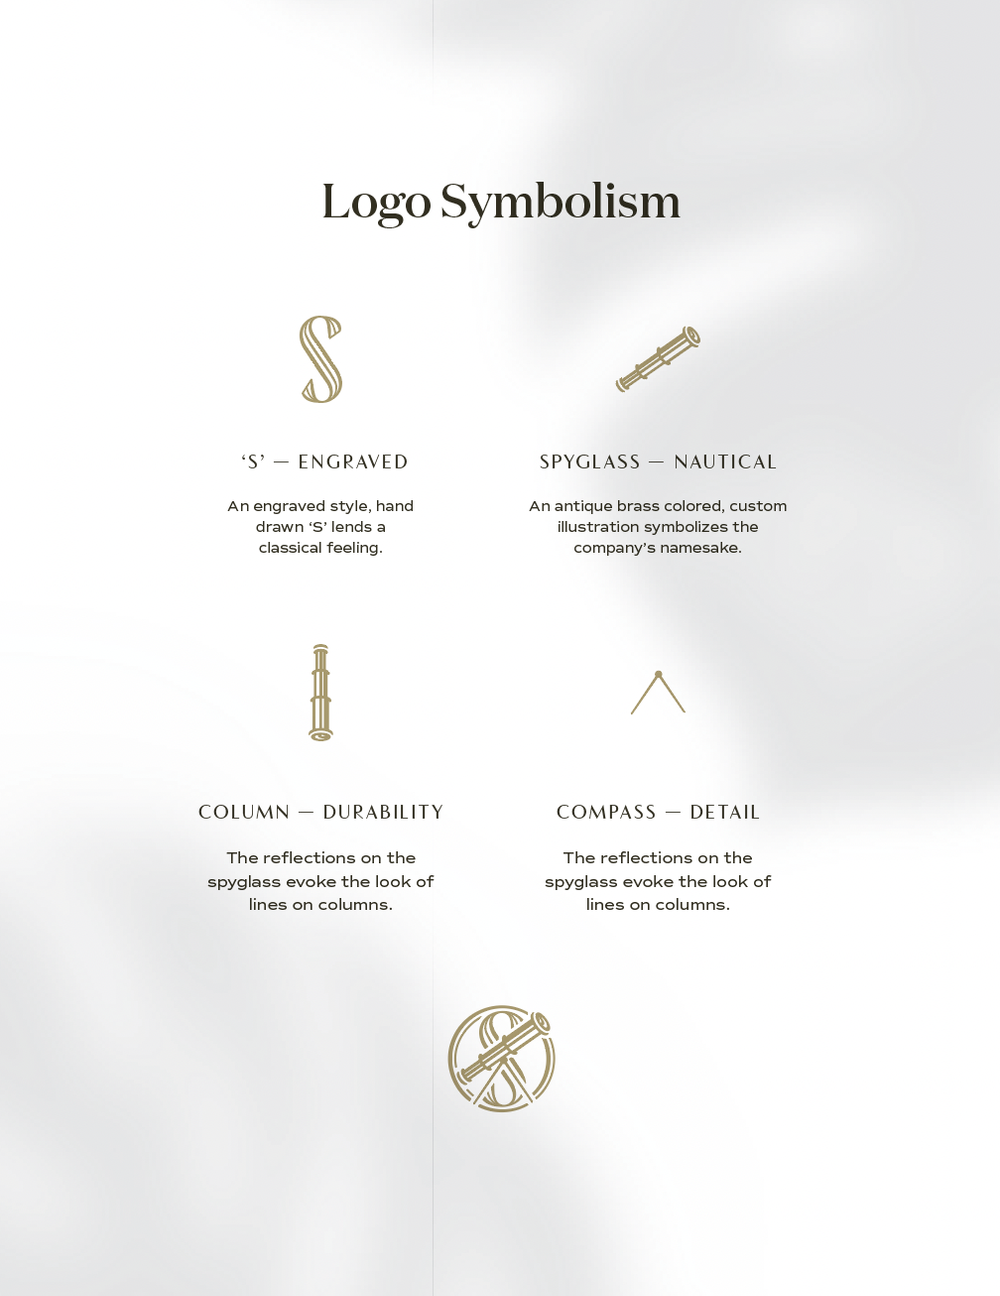 Spyglass Construction logo symbolism